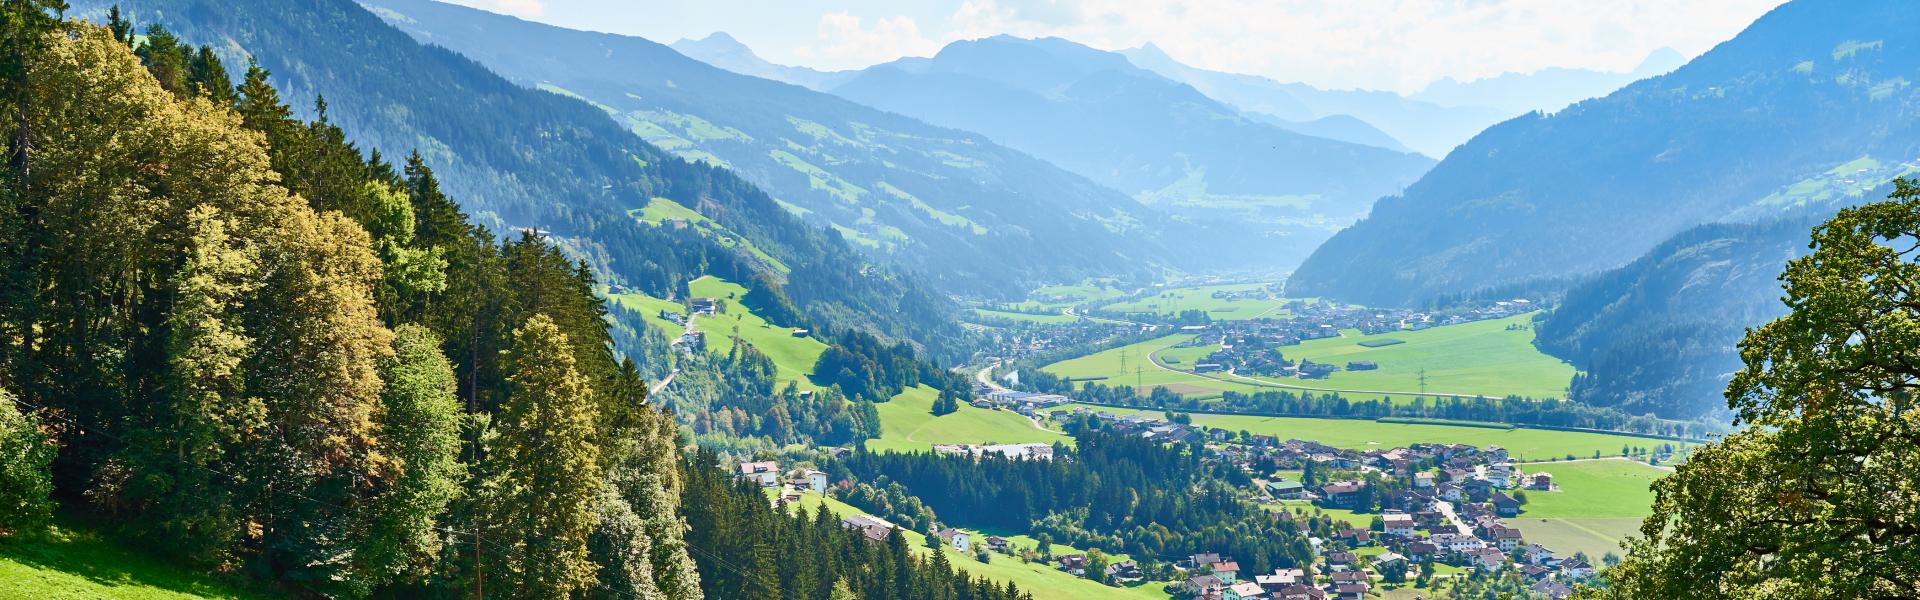 Ferienwohnungen & Ferienhäuser für Urlaub in Tirol - Casamundo